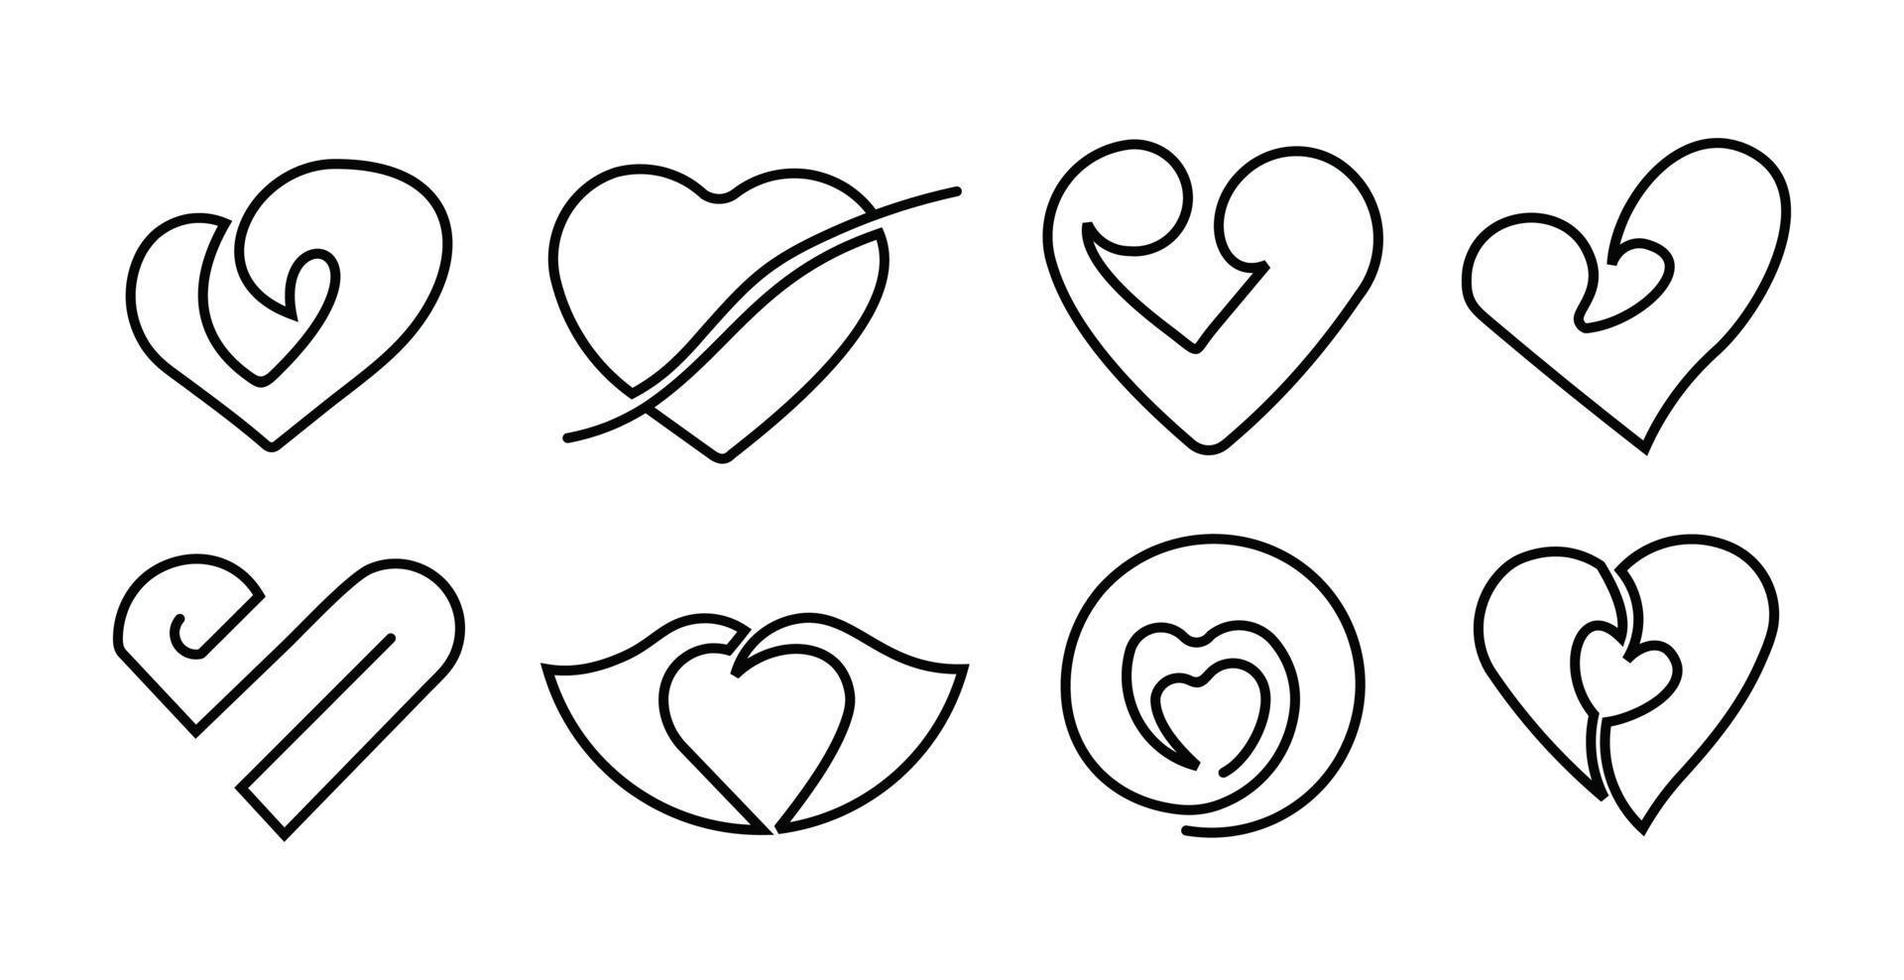 hart iconen vector set, romantische liefde icone met doorlopende lijn, happy valentine dag hart icon set